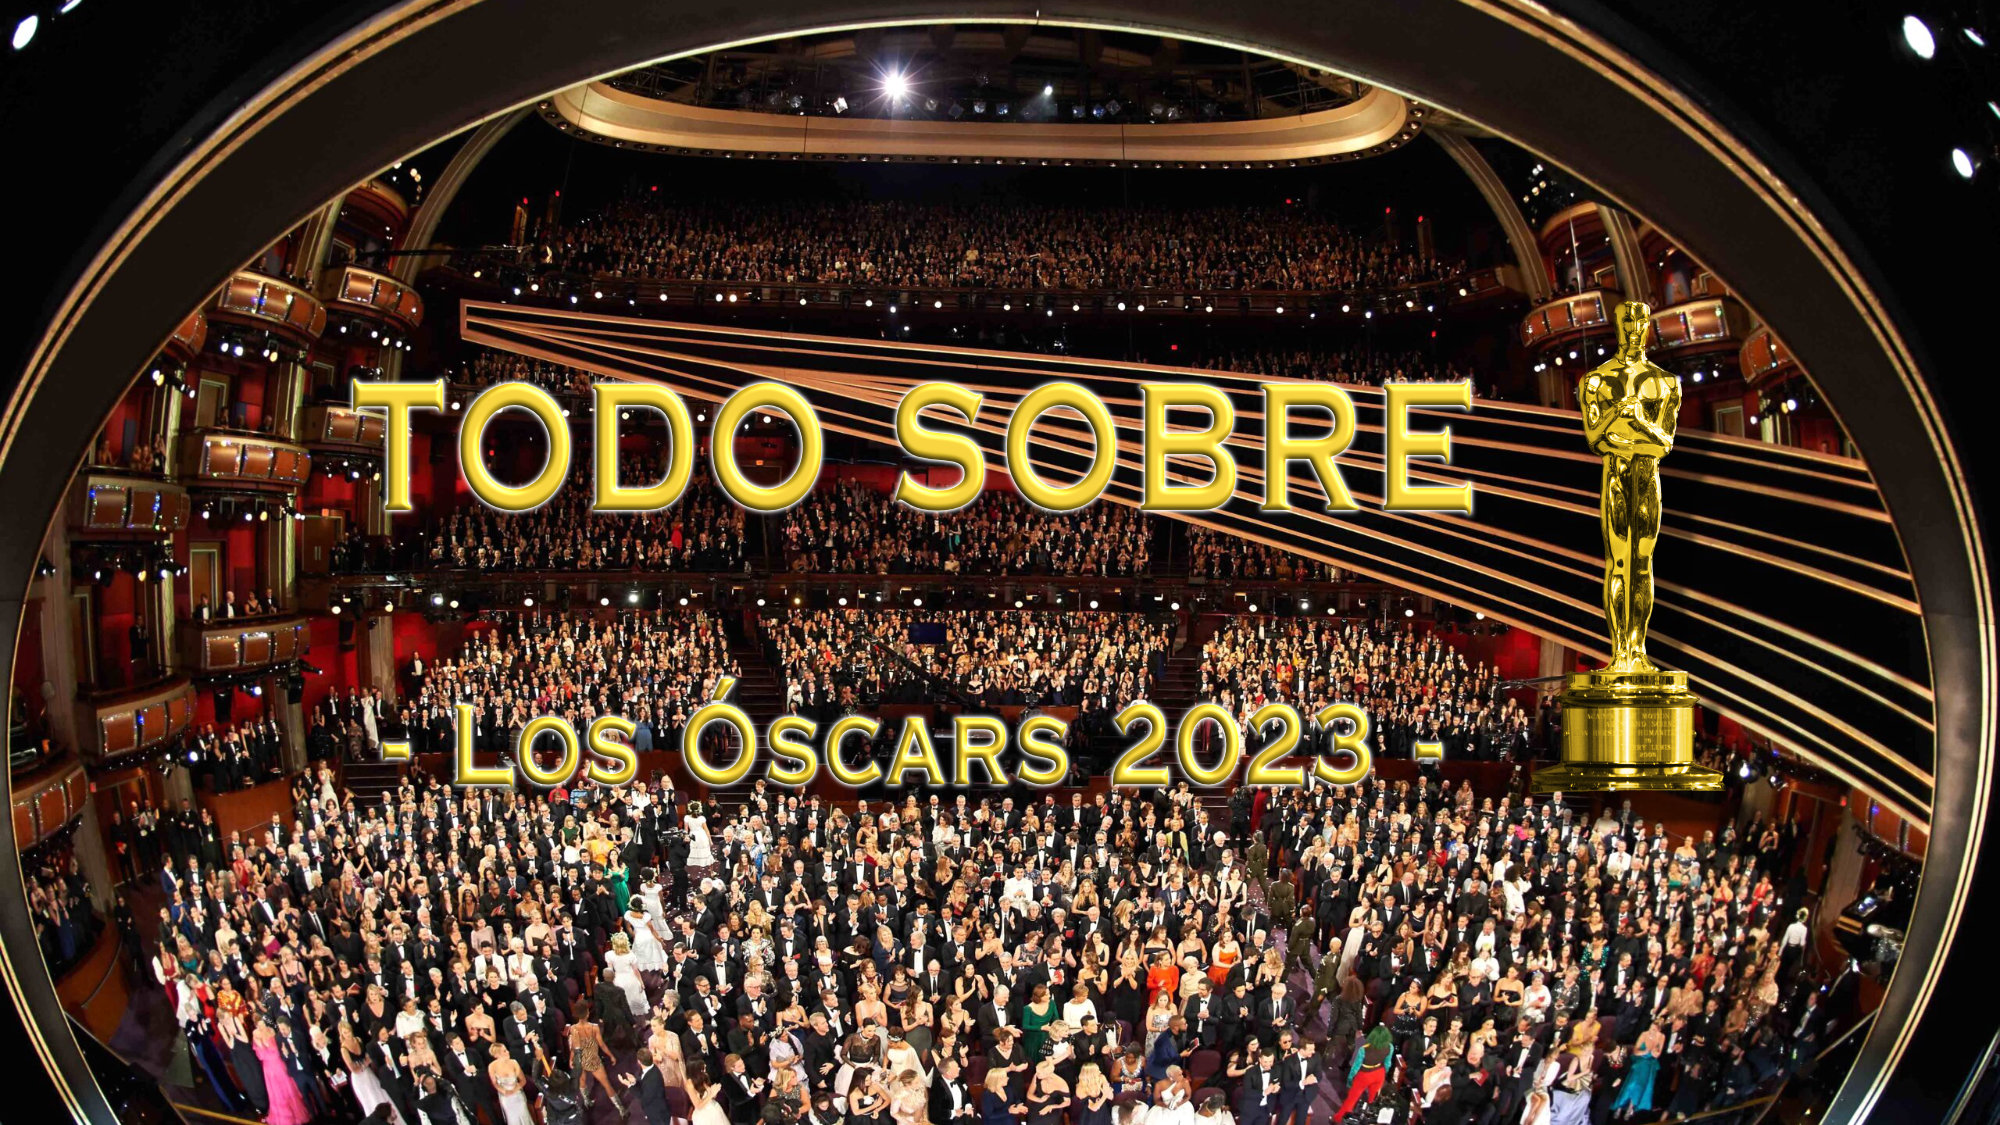 Todo sobre los Óscars 2023: cuándo son, qué y quién los presenta, artistas que actúan y cómo verlos en España y Latinoamérica